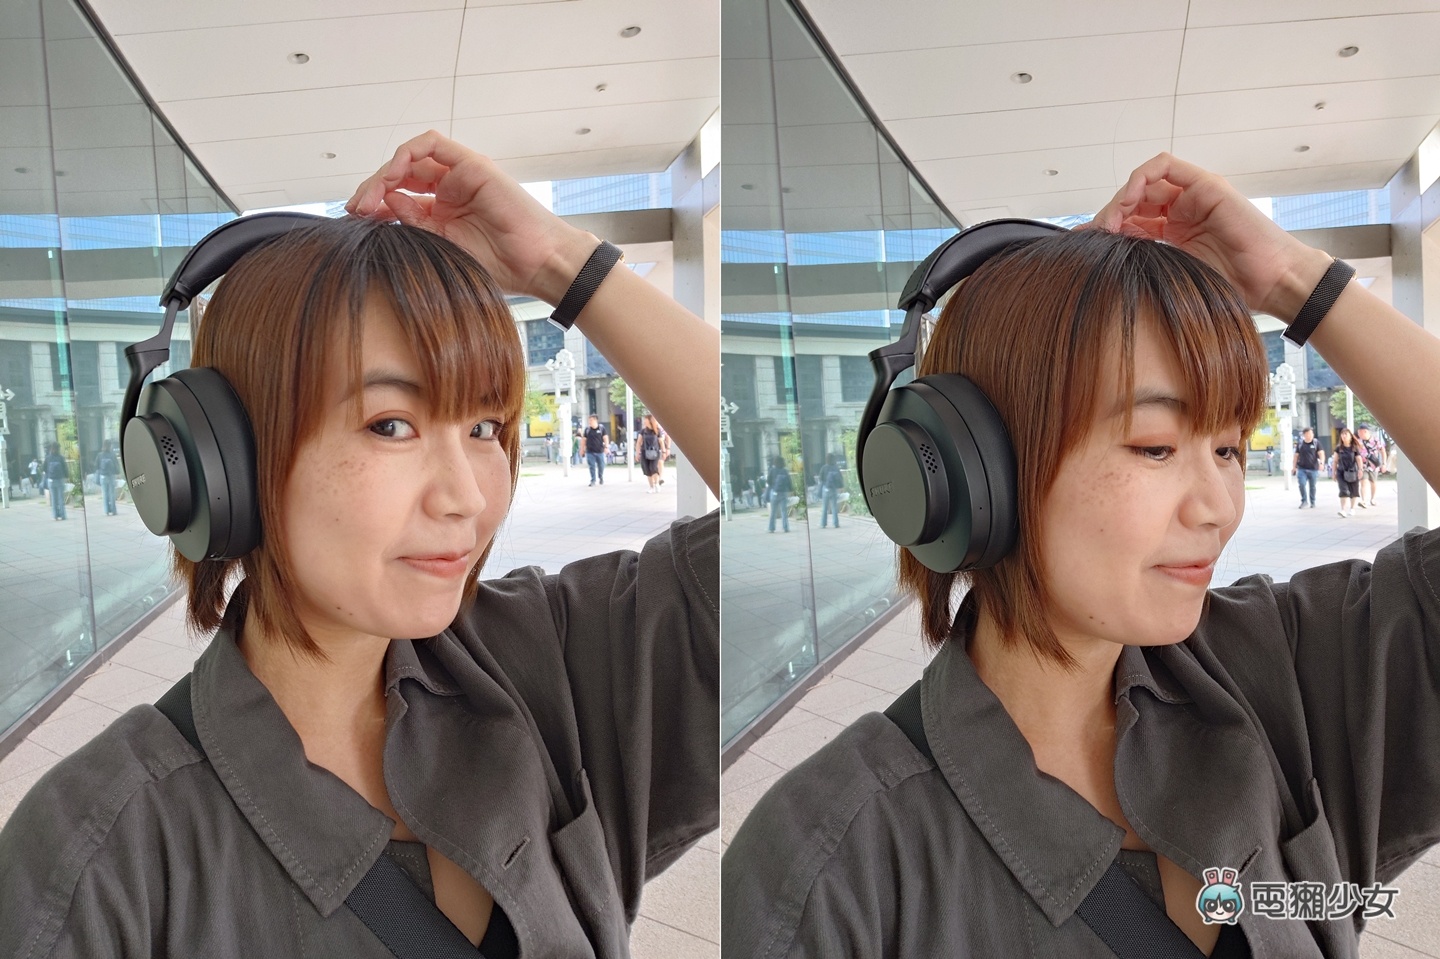 開箱｜無線主動降噪耳罩式耳機，為何你該給 Shure AONIC 50 第二代一次試聽機會？